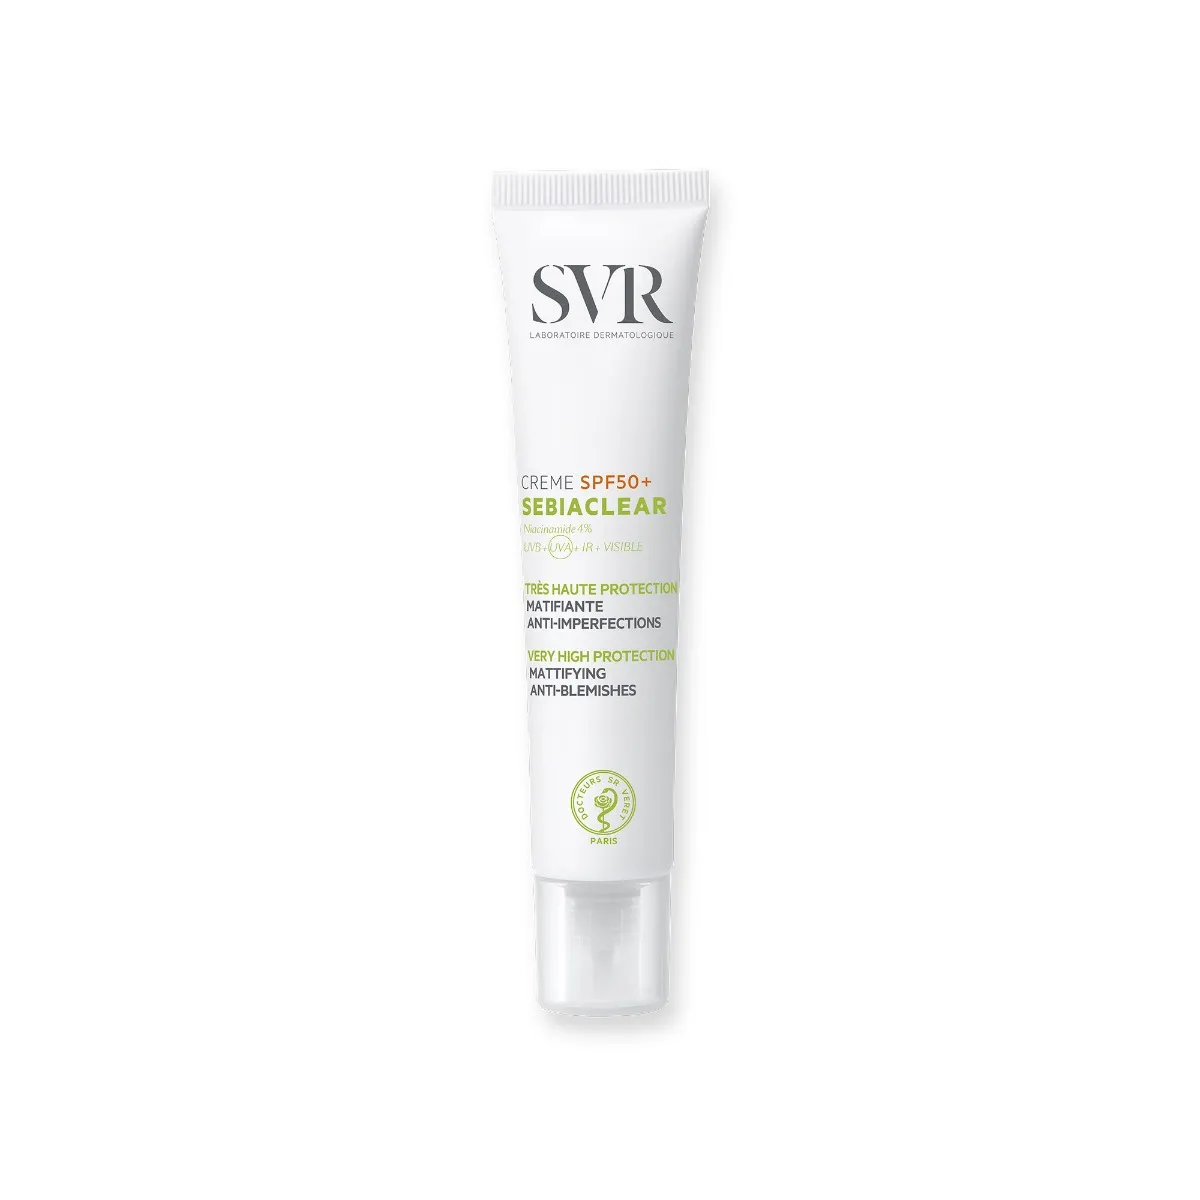 SVR Sebiaclear Creme SPF 50+, krem ochronny o działaniu matującym do skóry trądzikowej, 40 ml